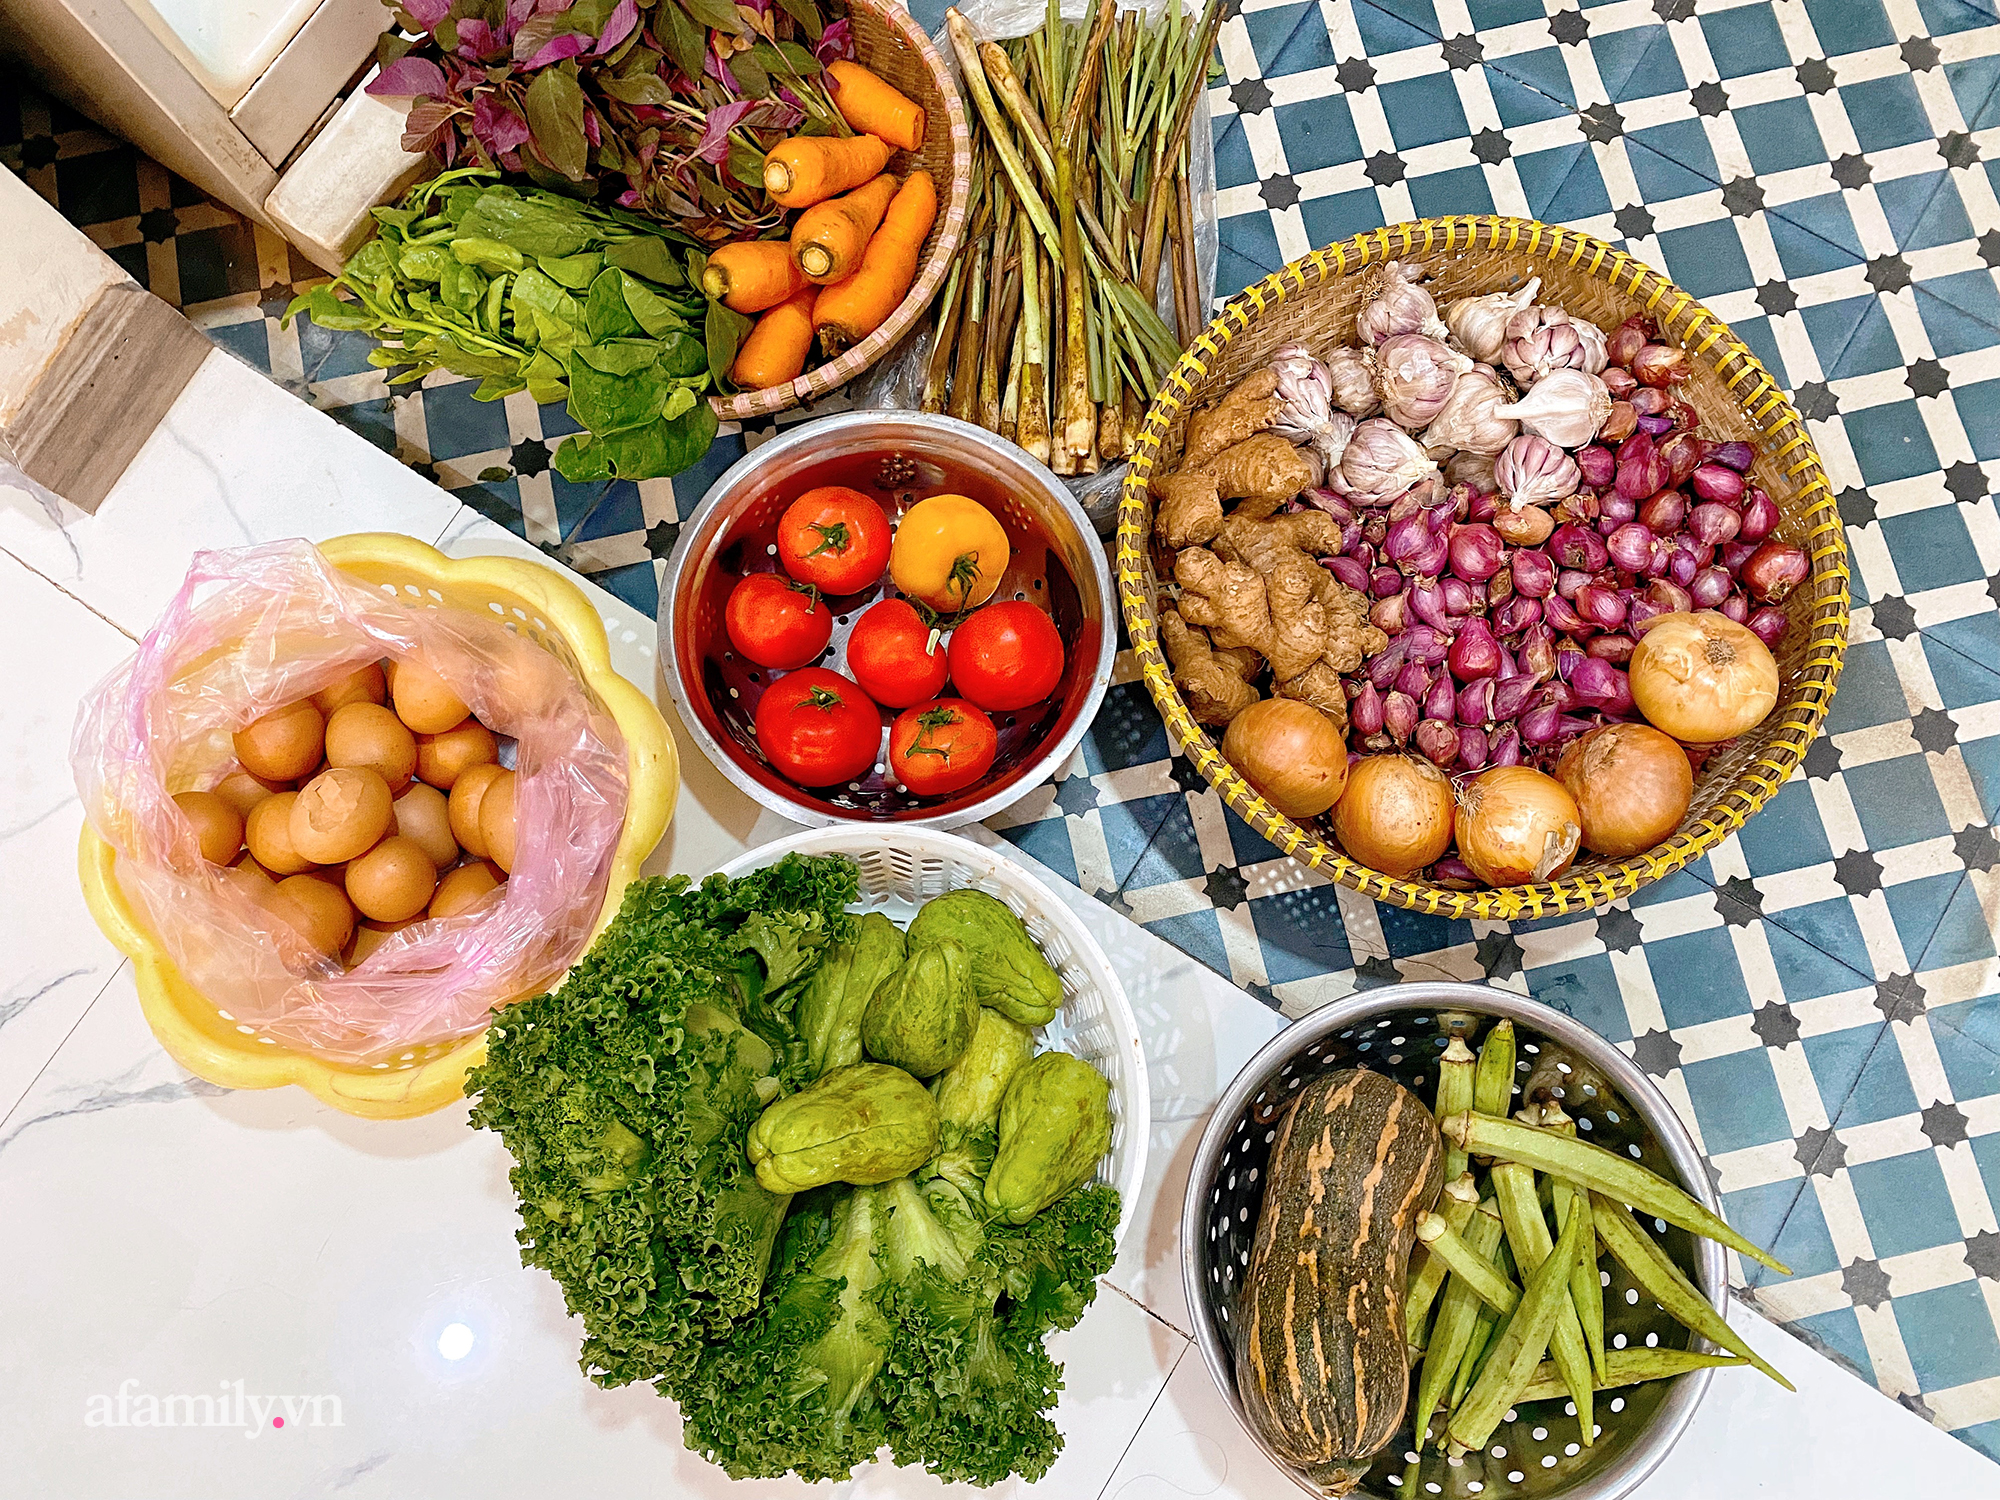 Cọng hành, bó cải bỗng thành "của" quý của nhiều gia đình tại Sài Gòn, thay đổi luôn cách dùng rau thịt trong mỗi bữa ăn! - Ảnh 7.